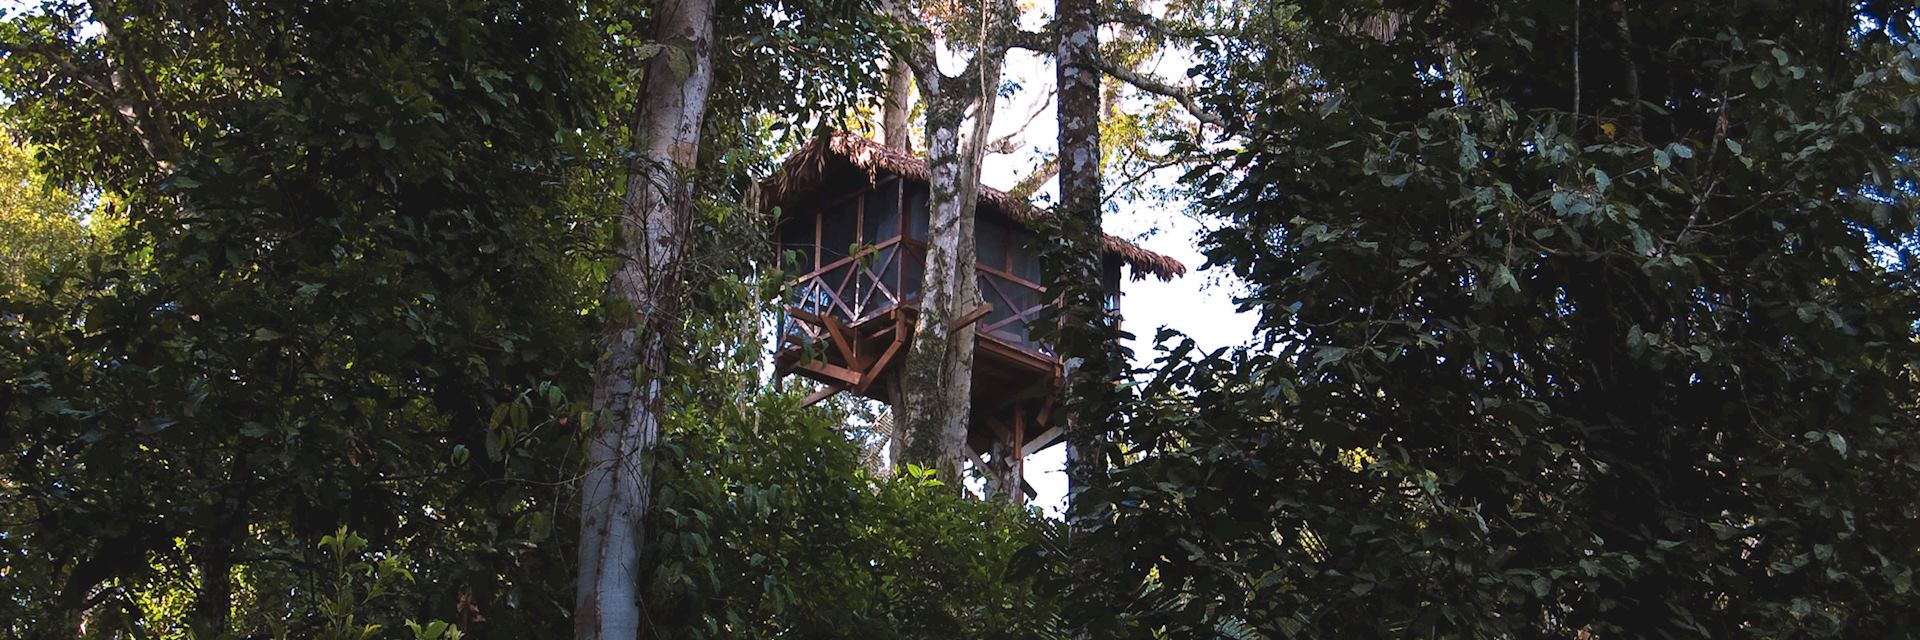 Canopy Tree house, Reserva Amazonica